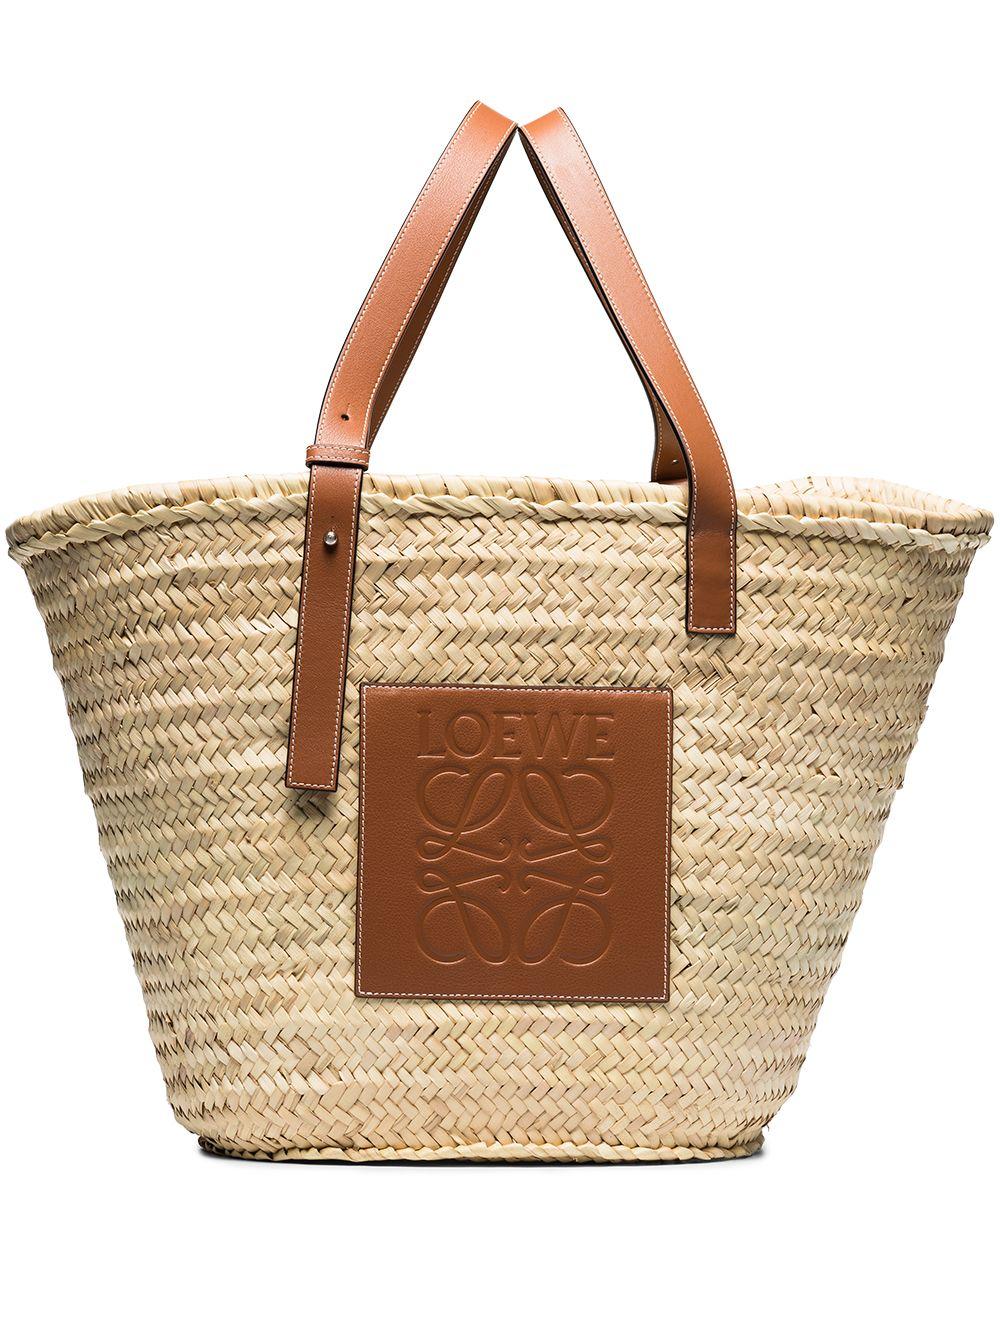 Basket Bag In Palm Leaf And Calfskin